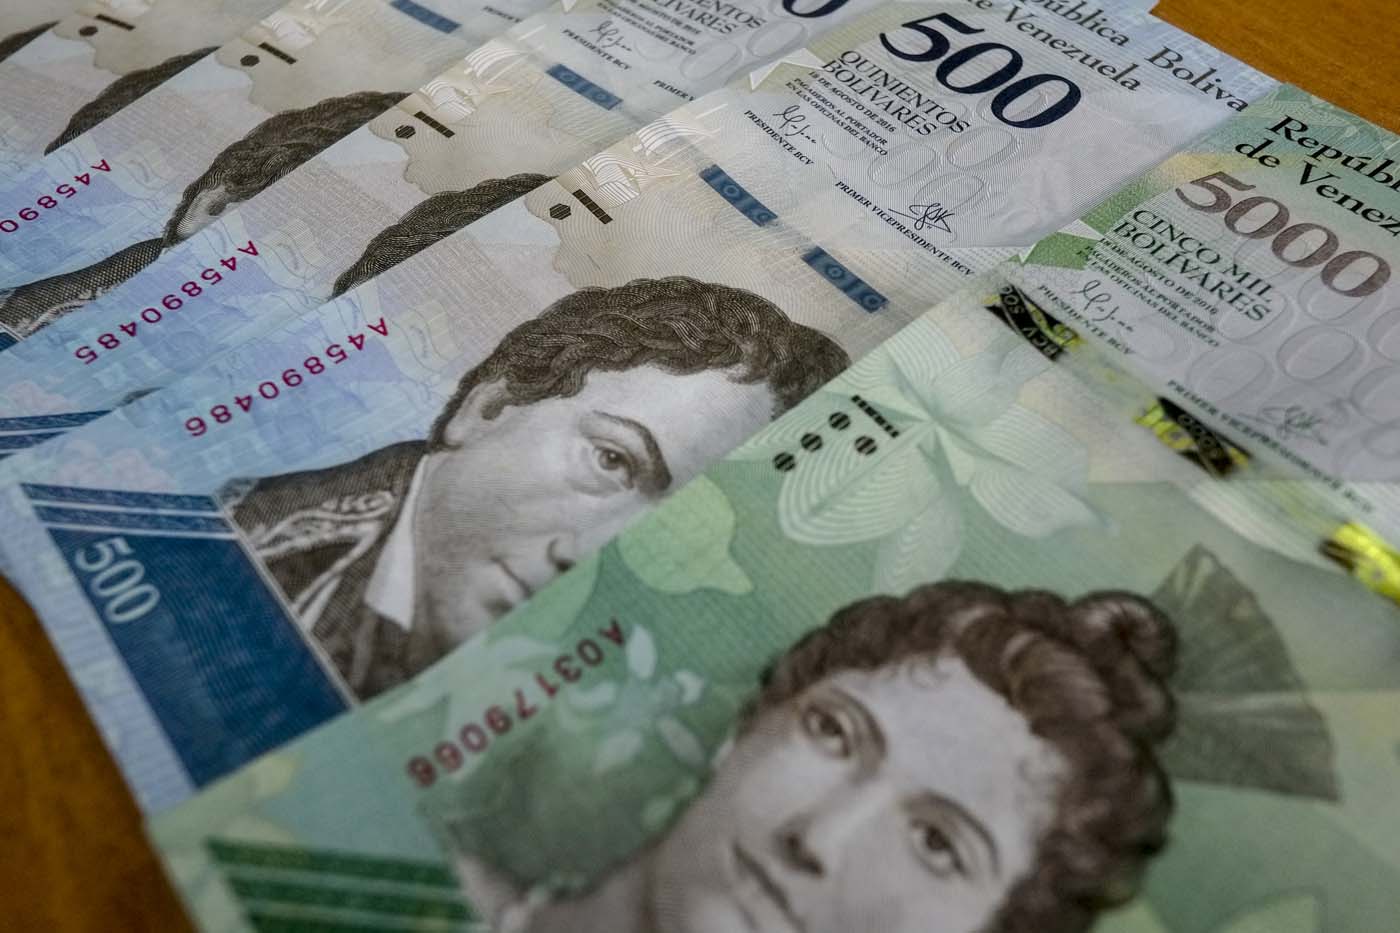 Billetes del nuevo cono monetario ya circulan en Cúcuta (Video)